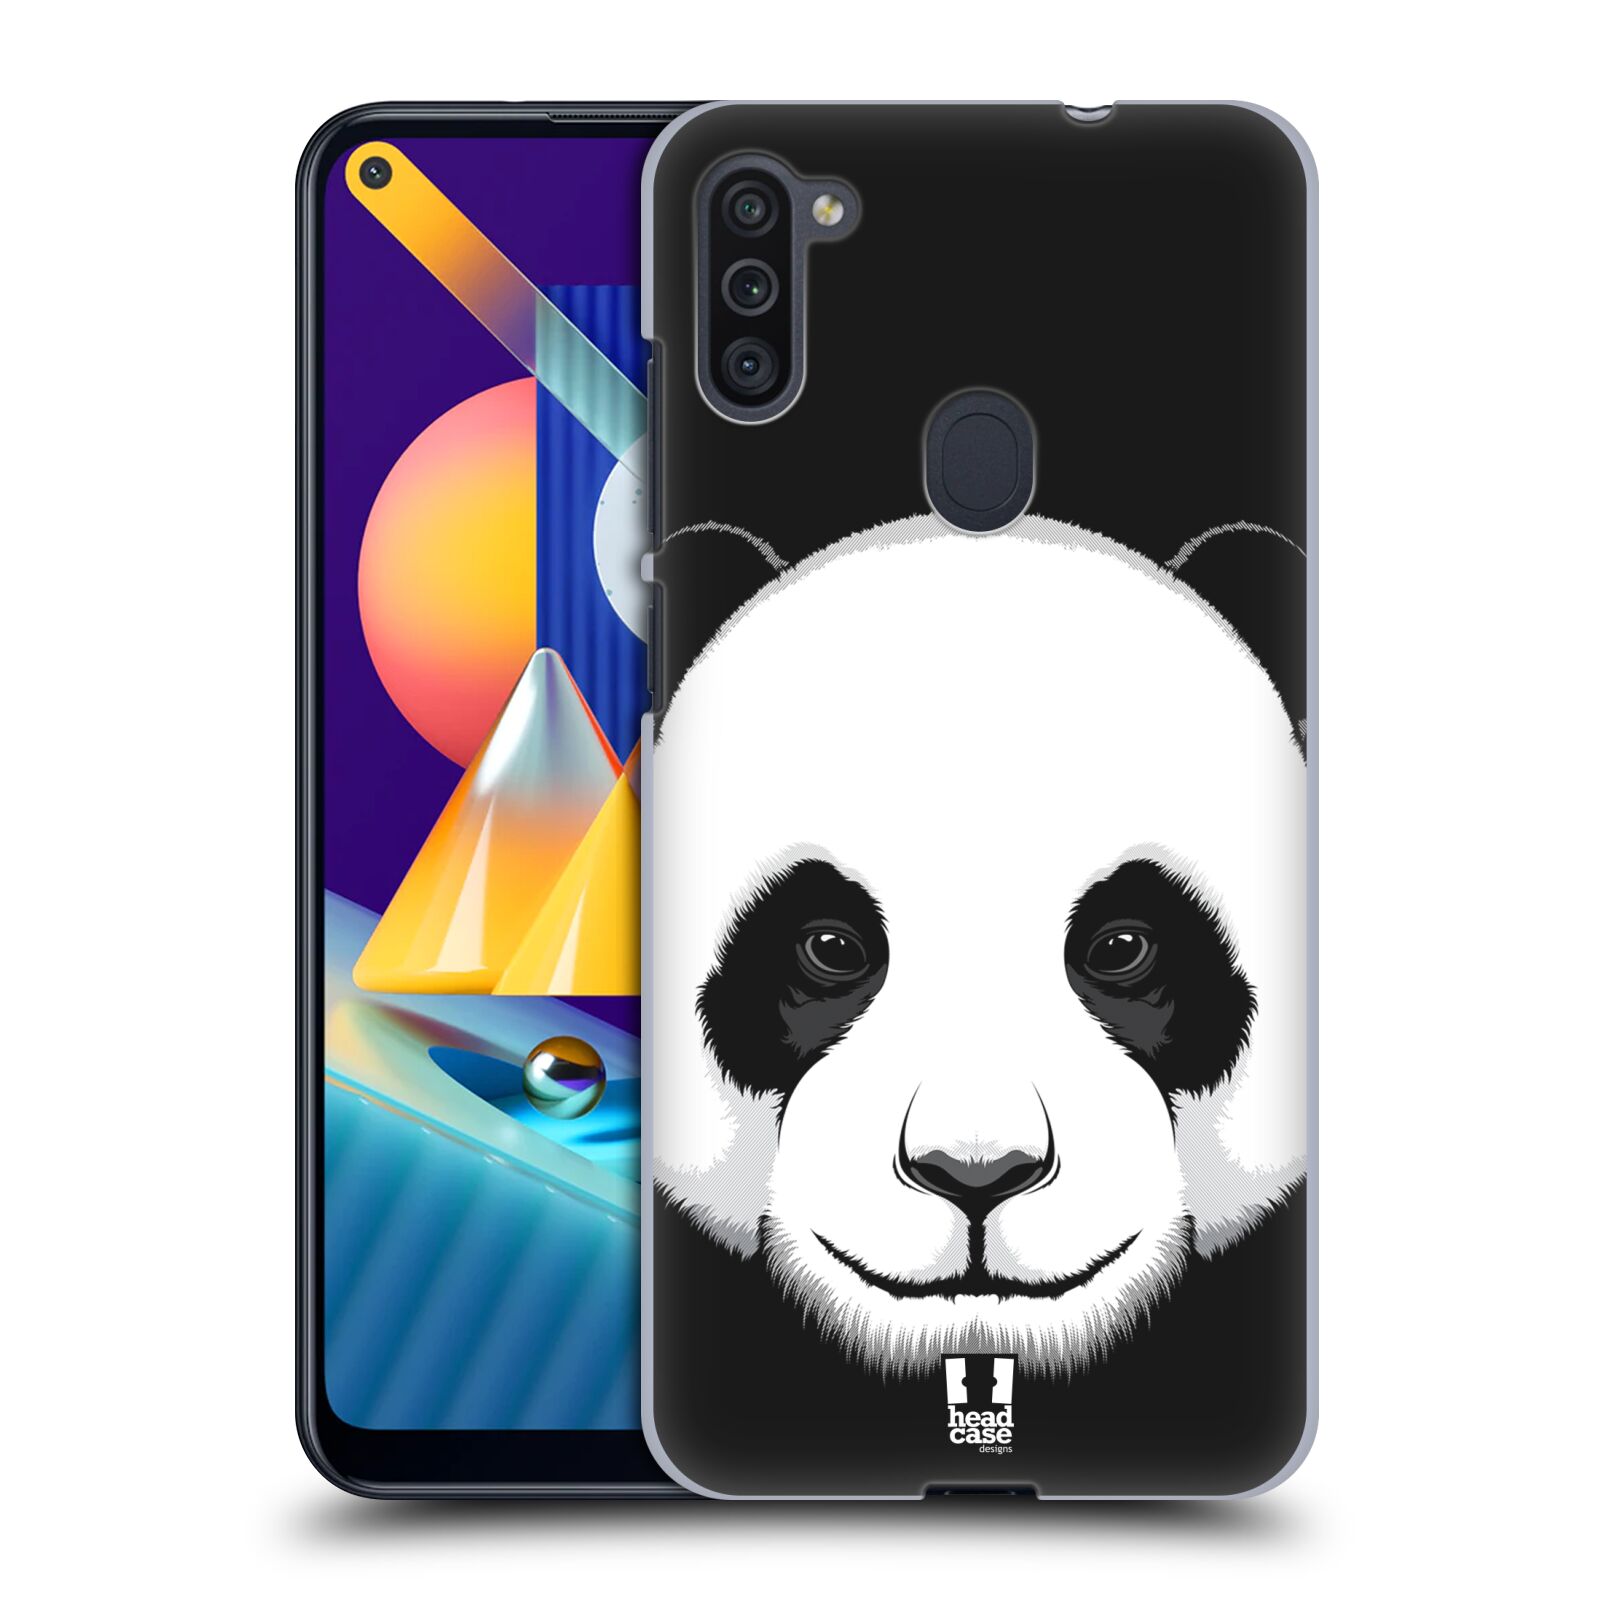 Plastový obal HEAD CASE na mobil Samsung Galaxy M11 vzor Zvíře kreslená tvář panda